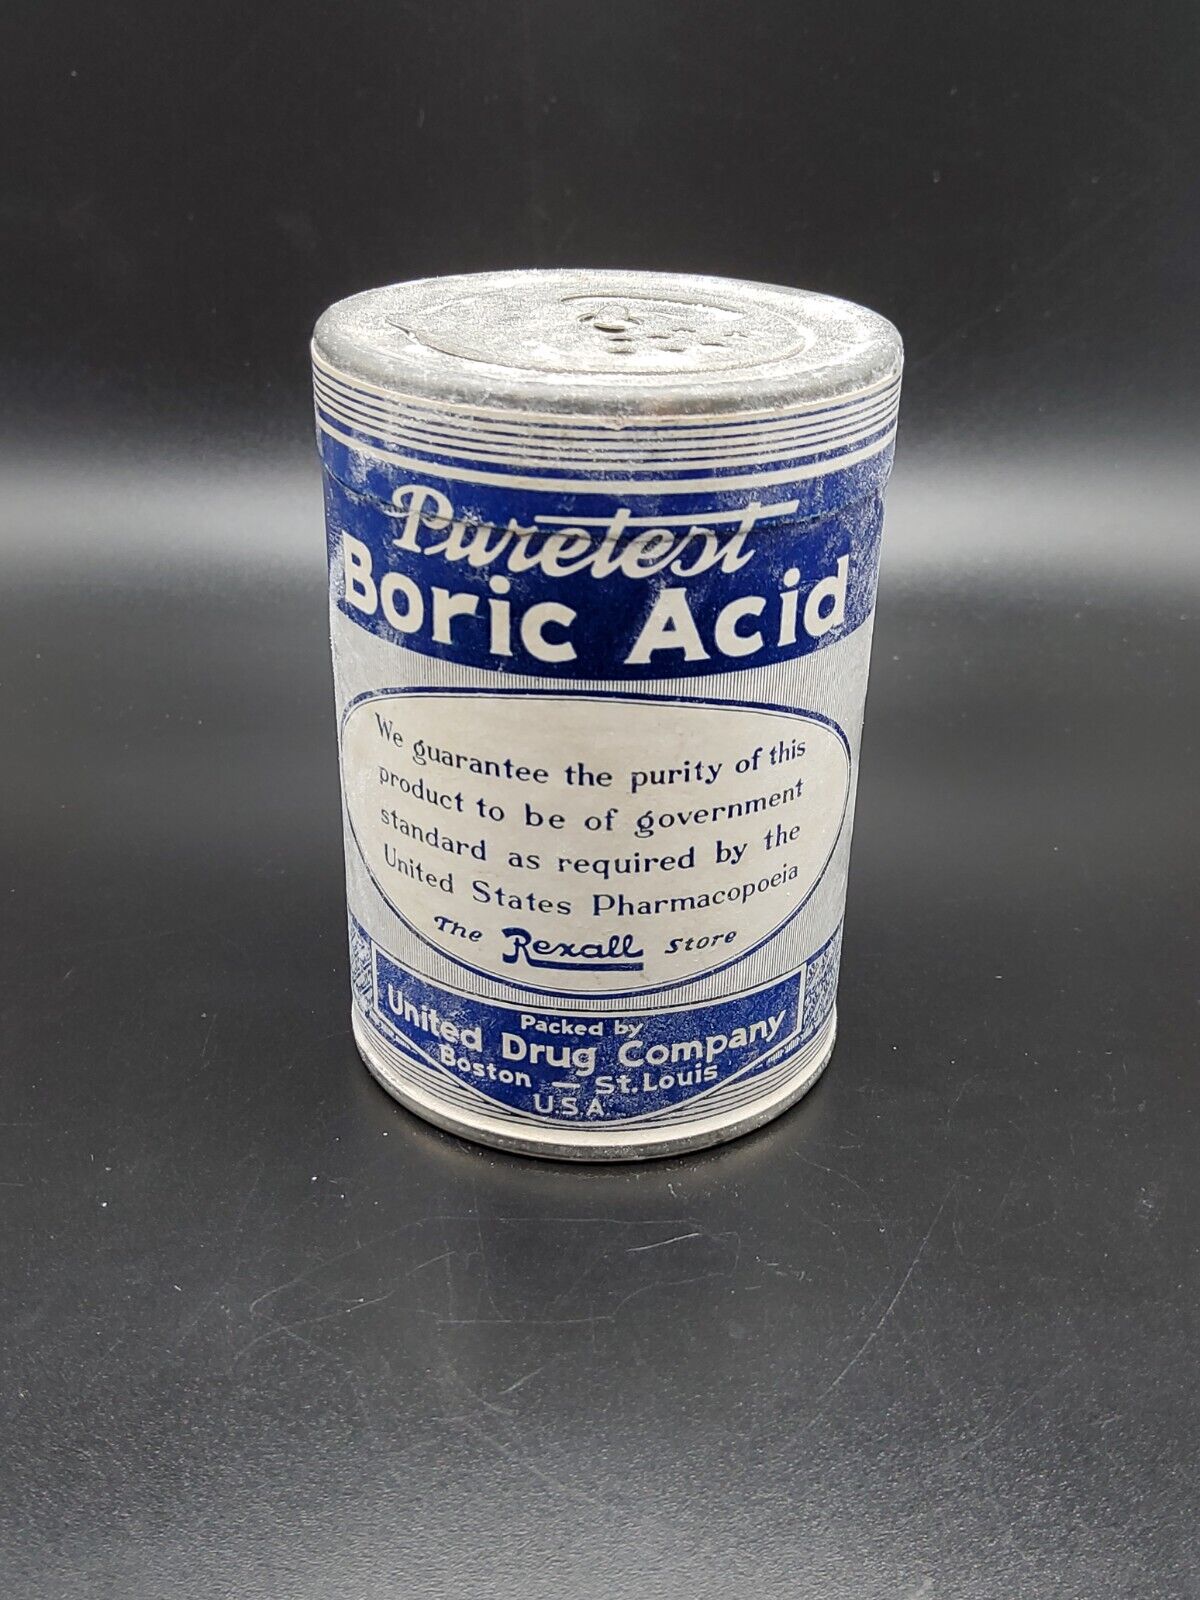 Vintage Medicine Tin: PURETEST Boric A cid Powder, United Drug Co ~ USED